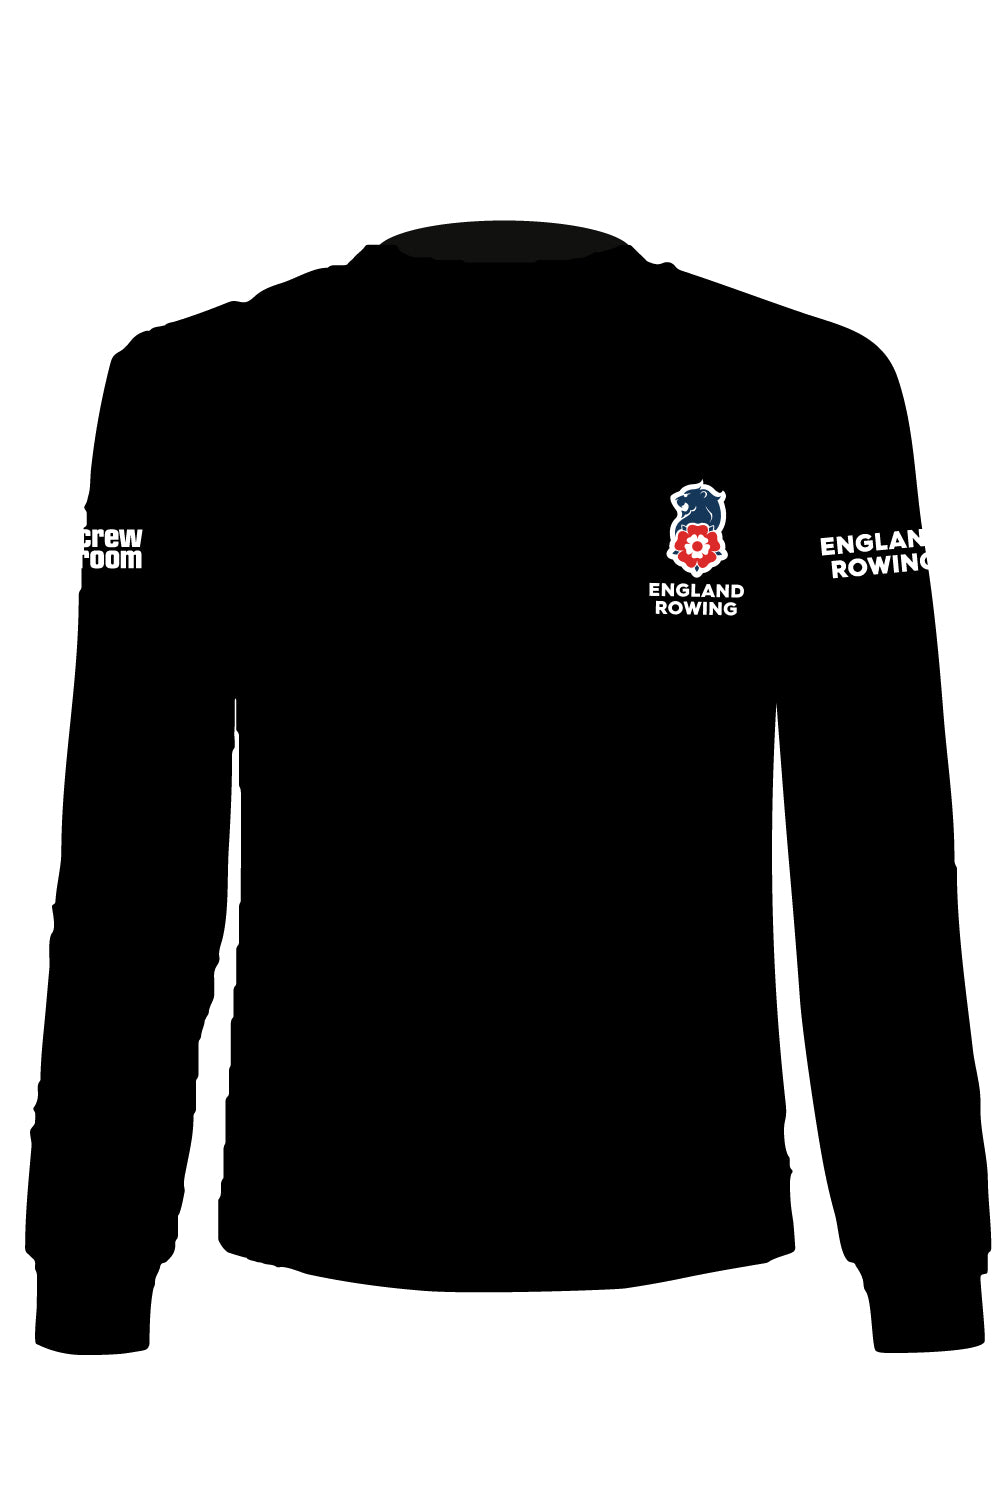 England Rowing Merchandise Sweatshirt (Unisex)